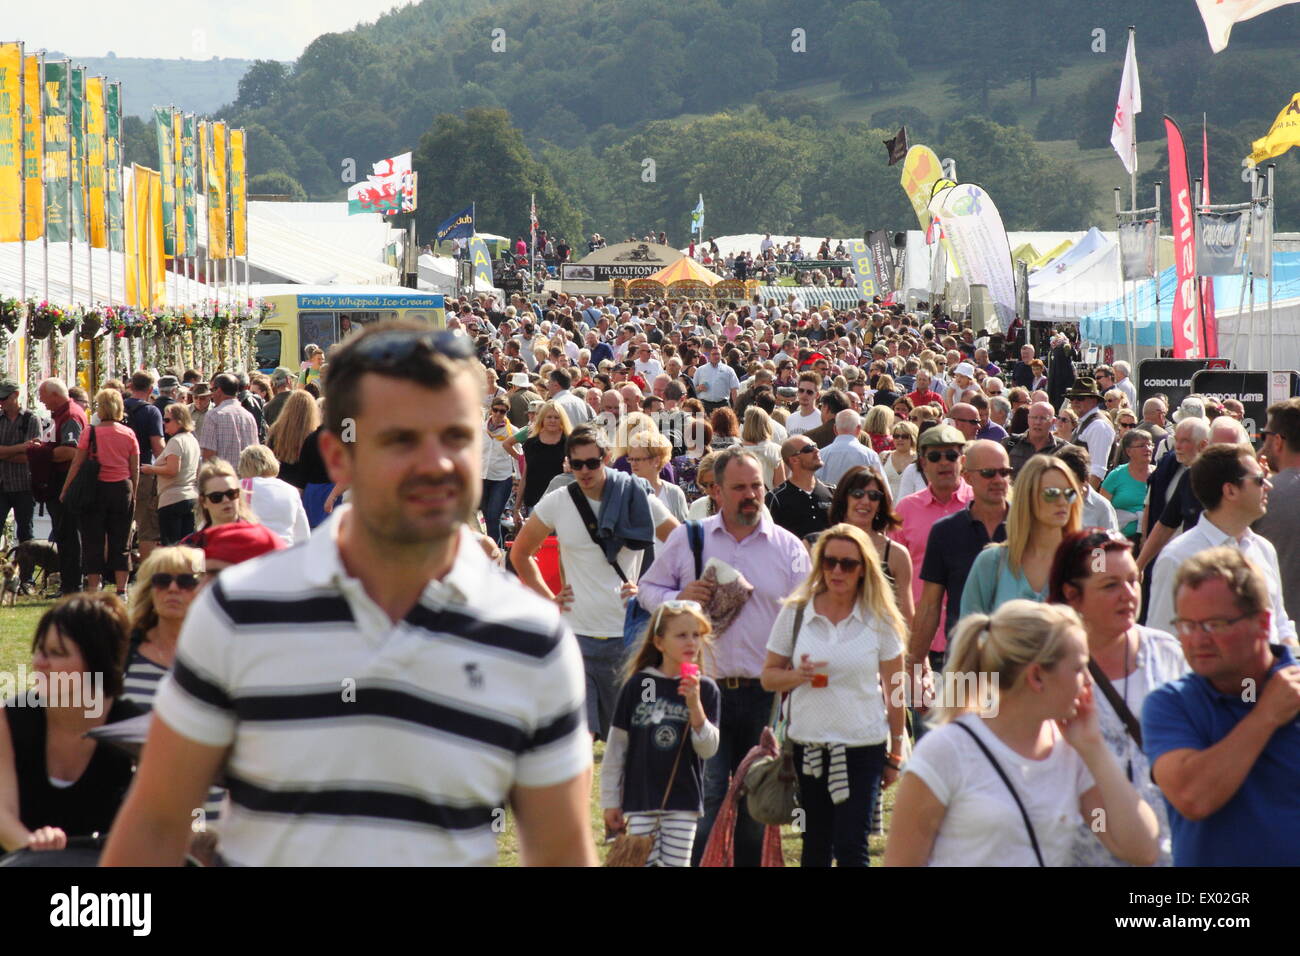 Les gens y parcourir l'échange se tient sur une journée bien remplie à Chatsworth Country Fair, Peak District, Derbyshire, Angleterre Royaume-uni - 2014 Banque D'Images